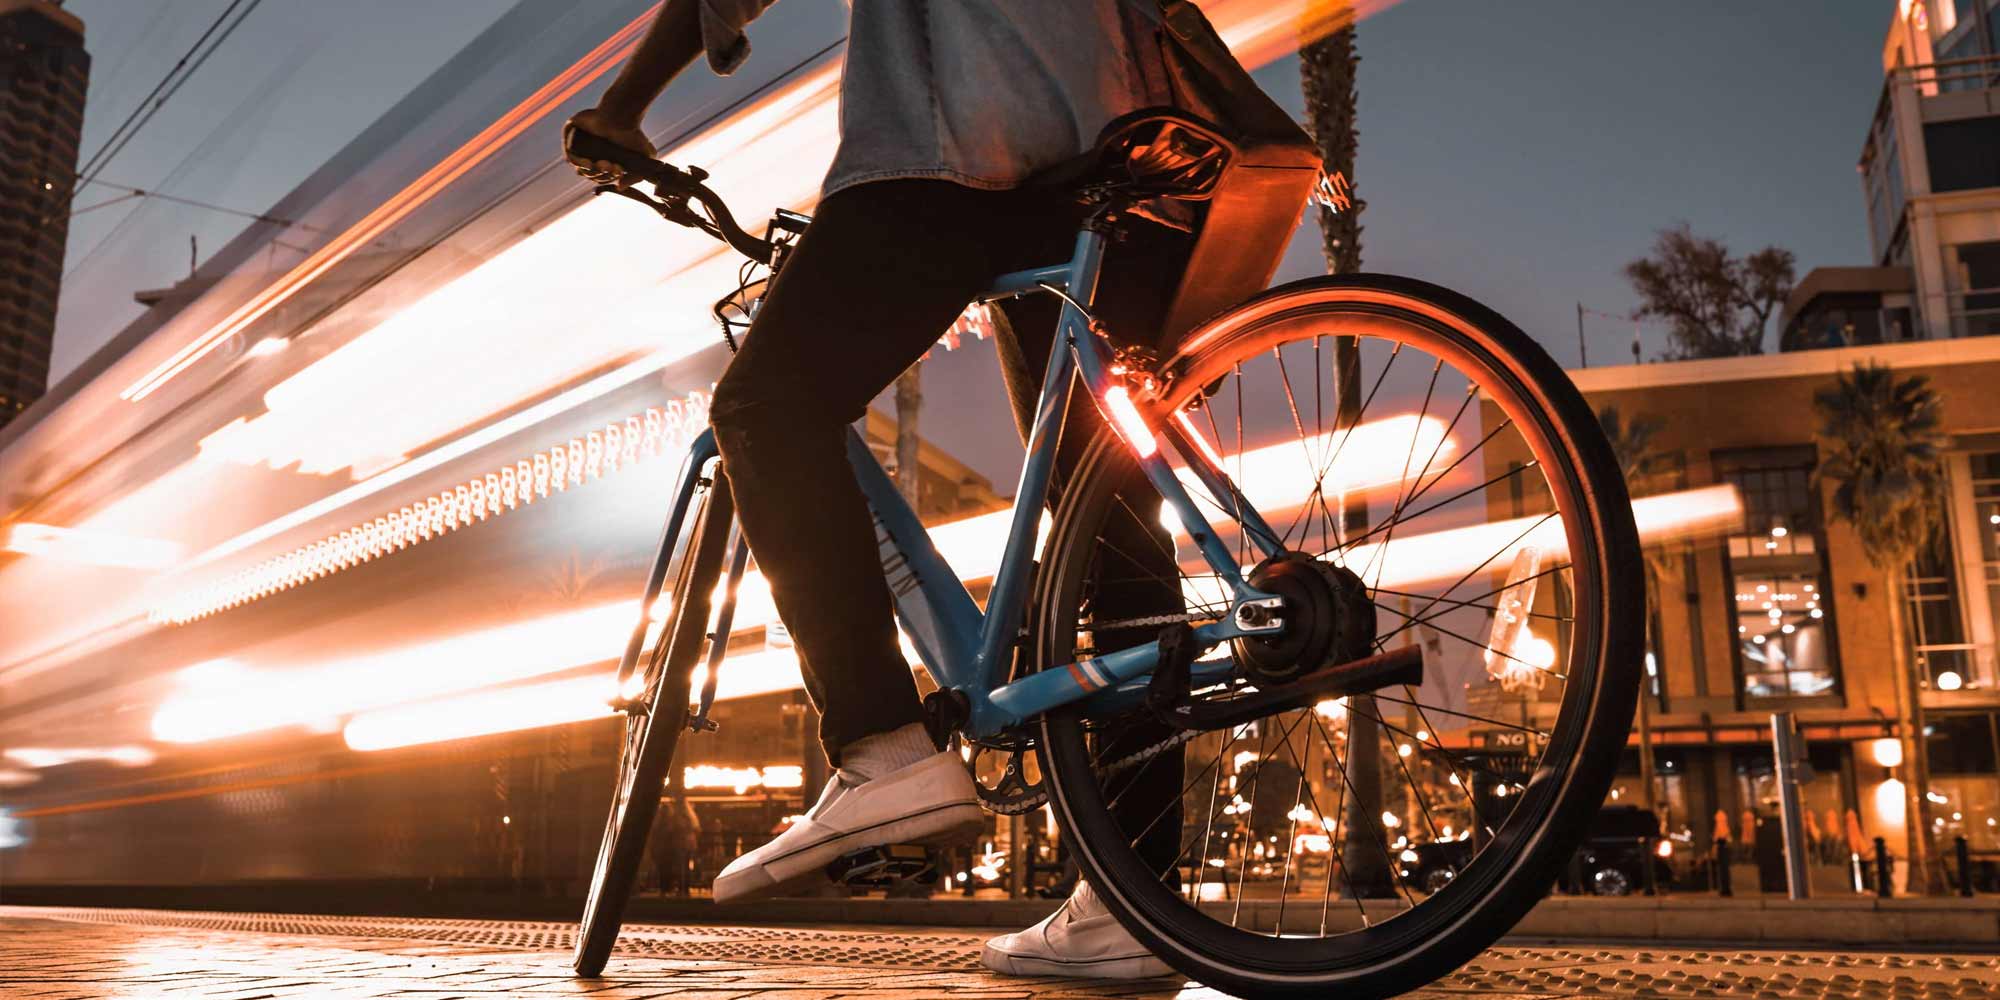 Bike lights